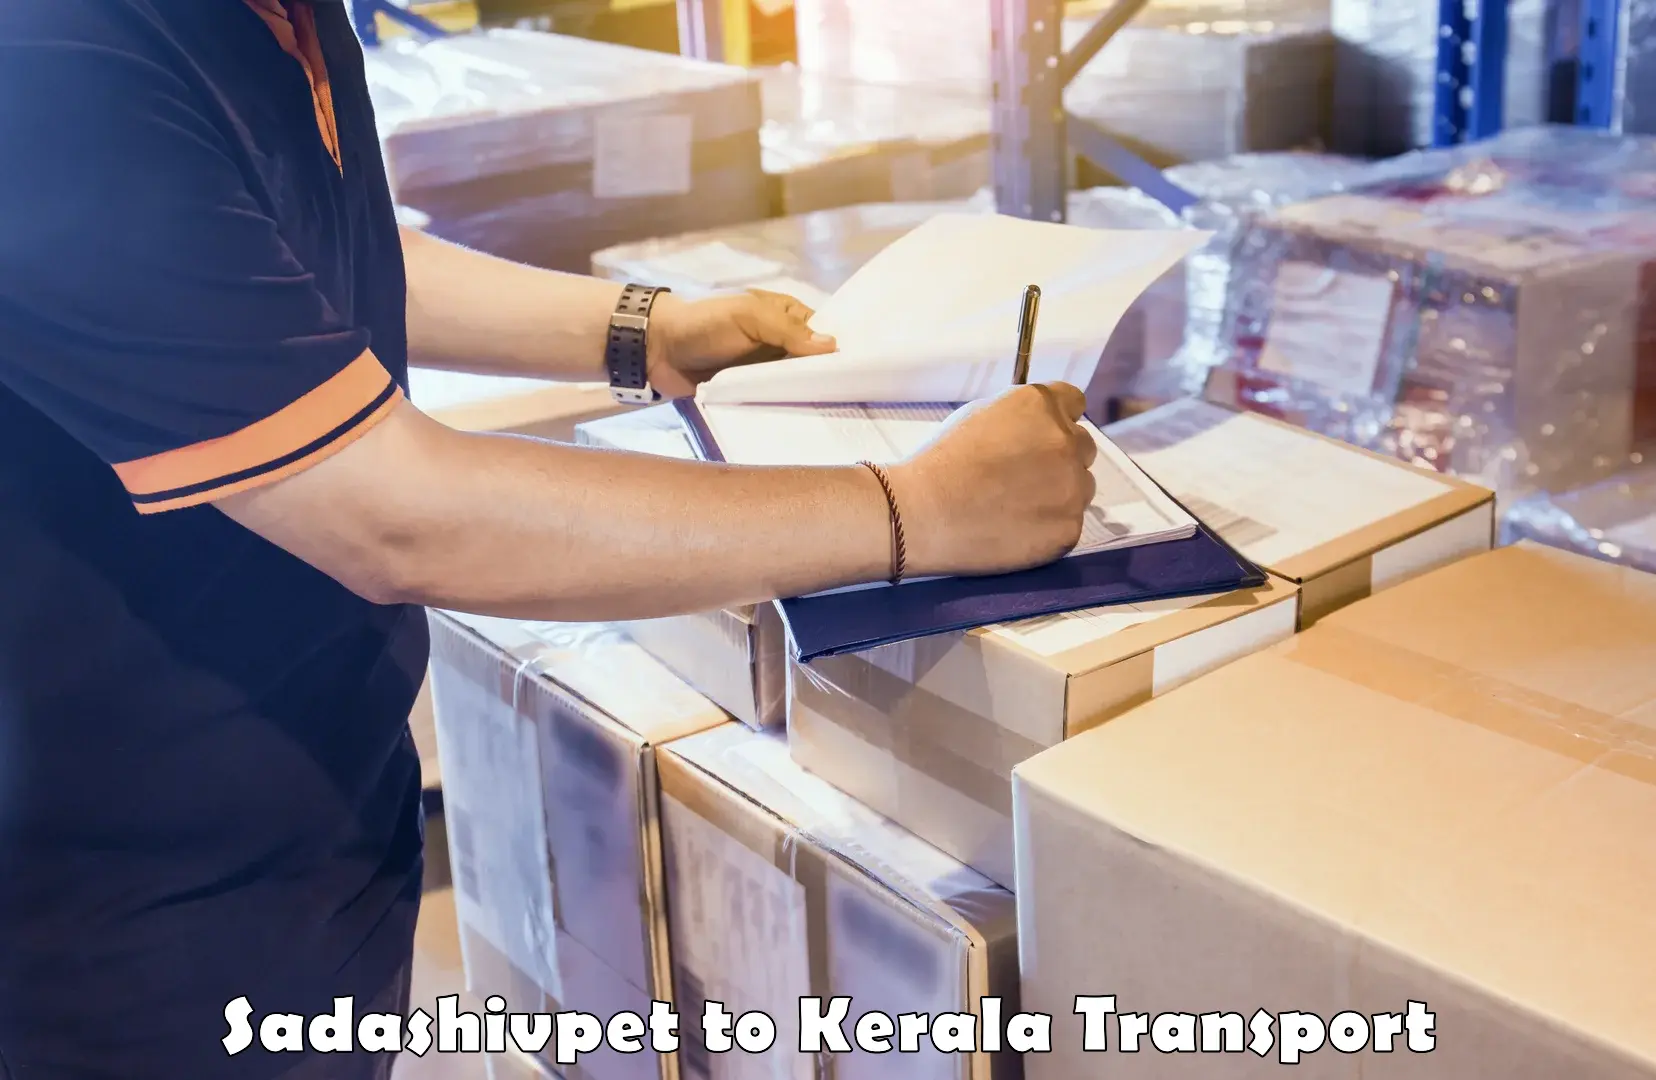 Transport services Sadashivpet to Kerala